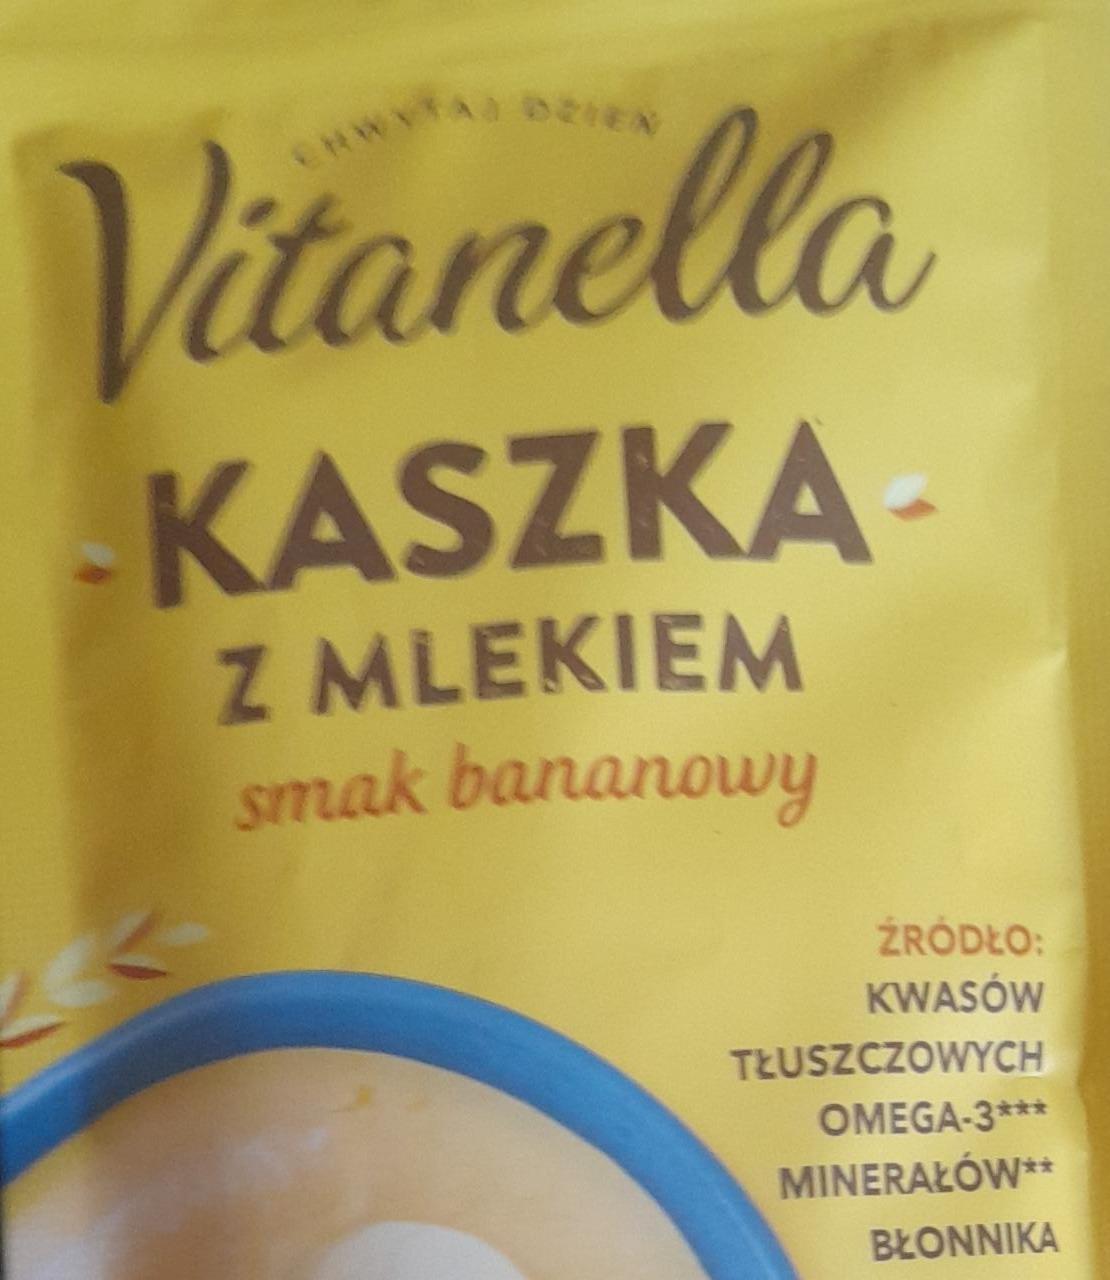 Fotografie - Kaszka z mlekiem smak bananowy Vitanella